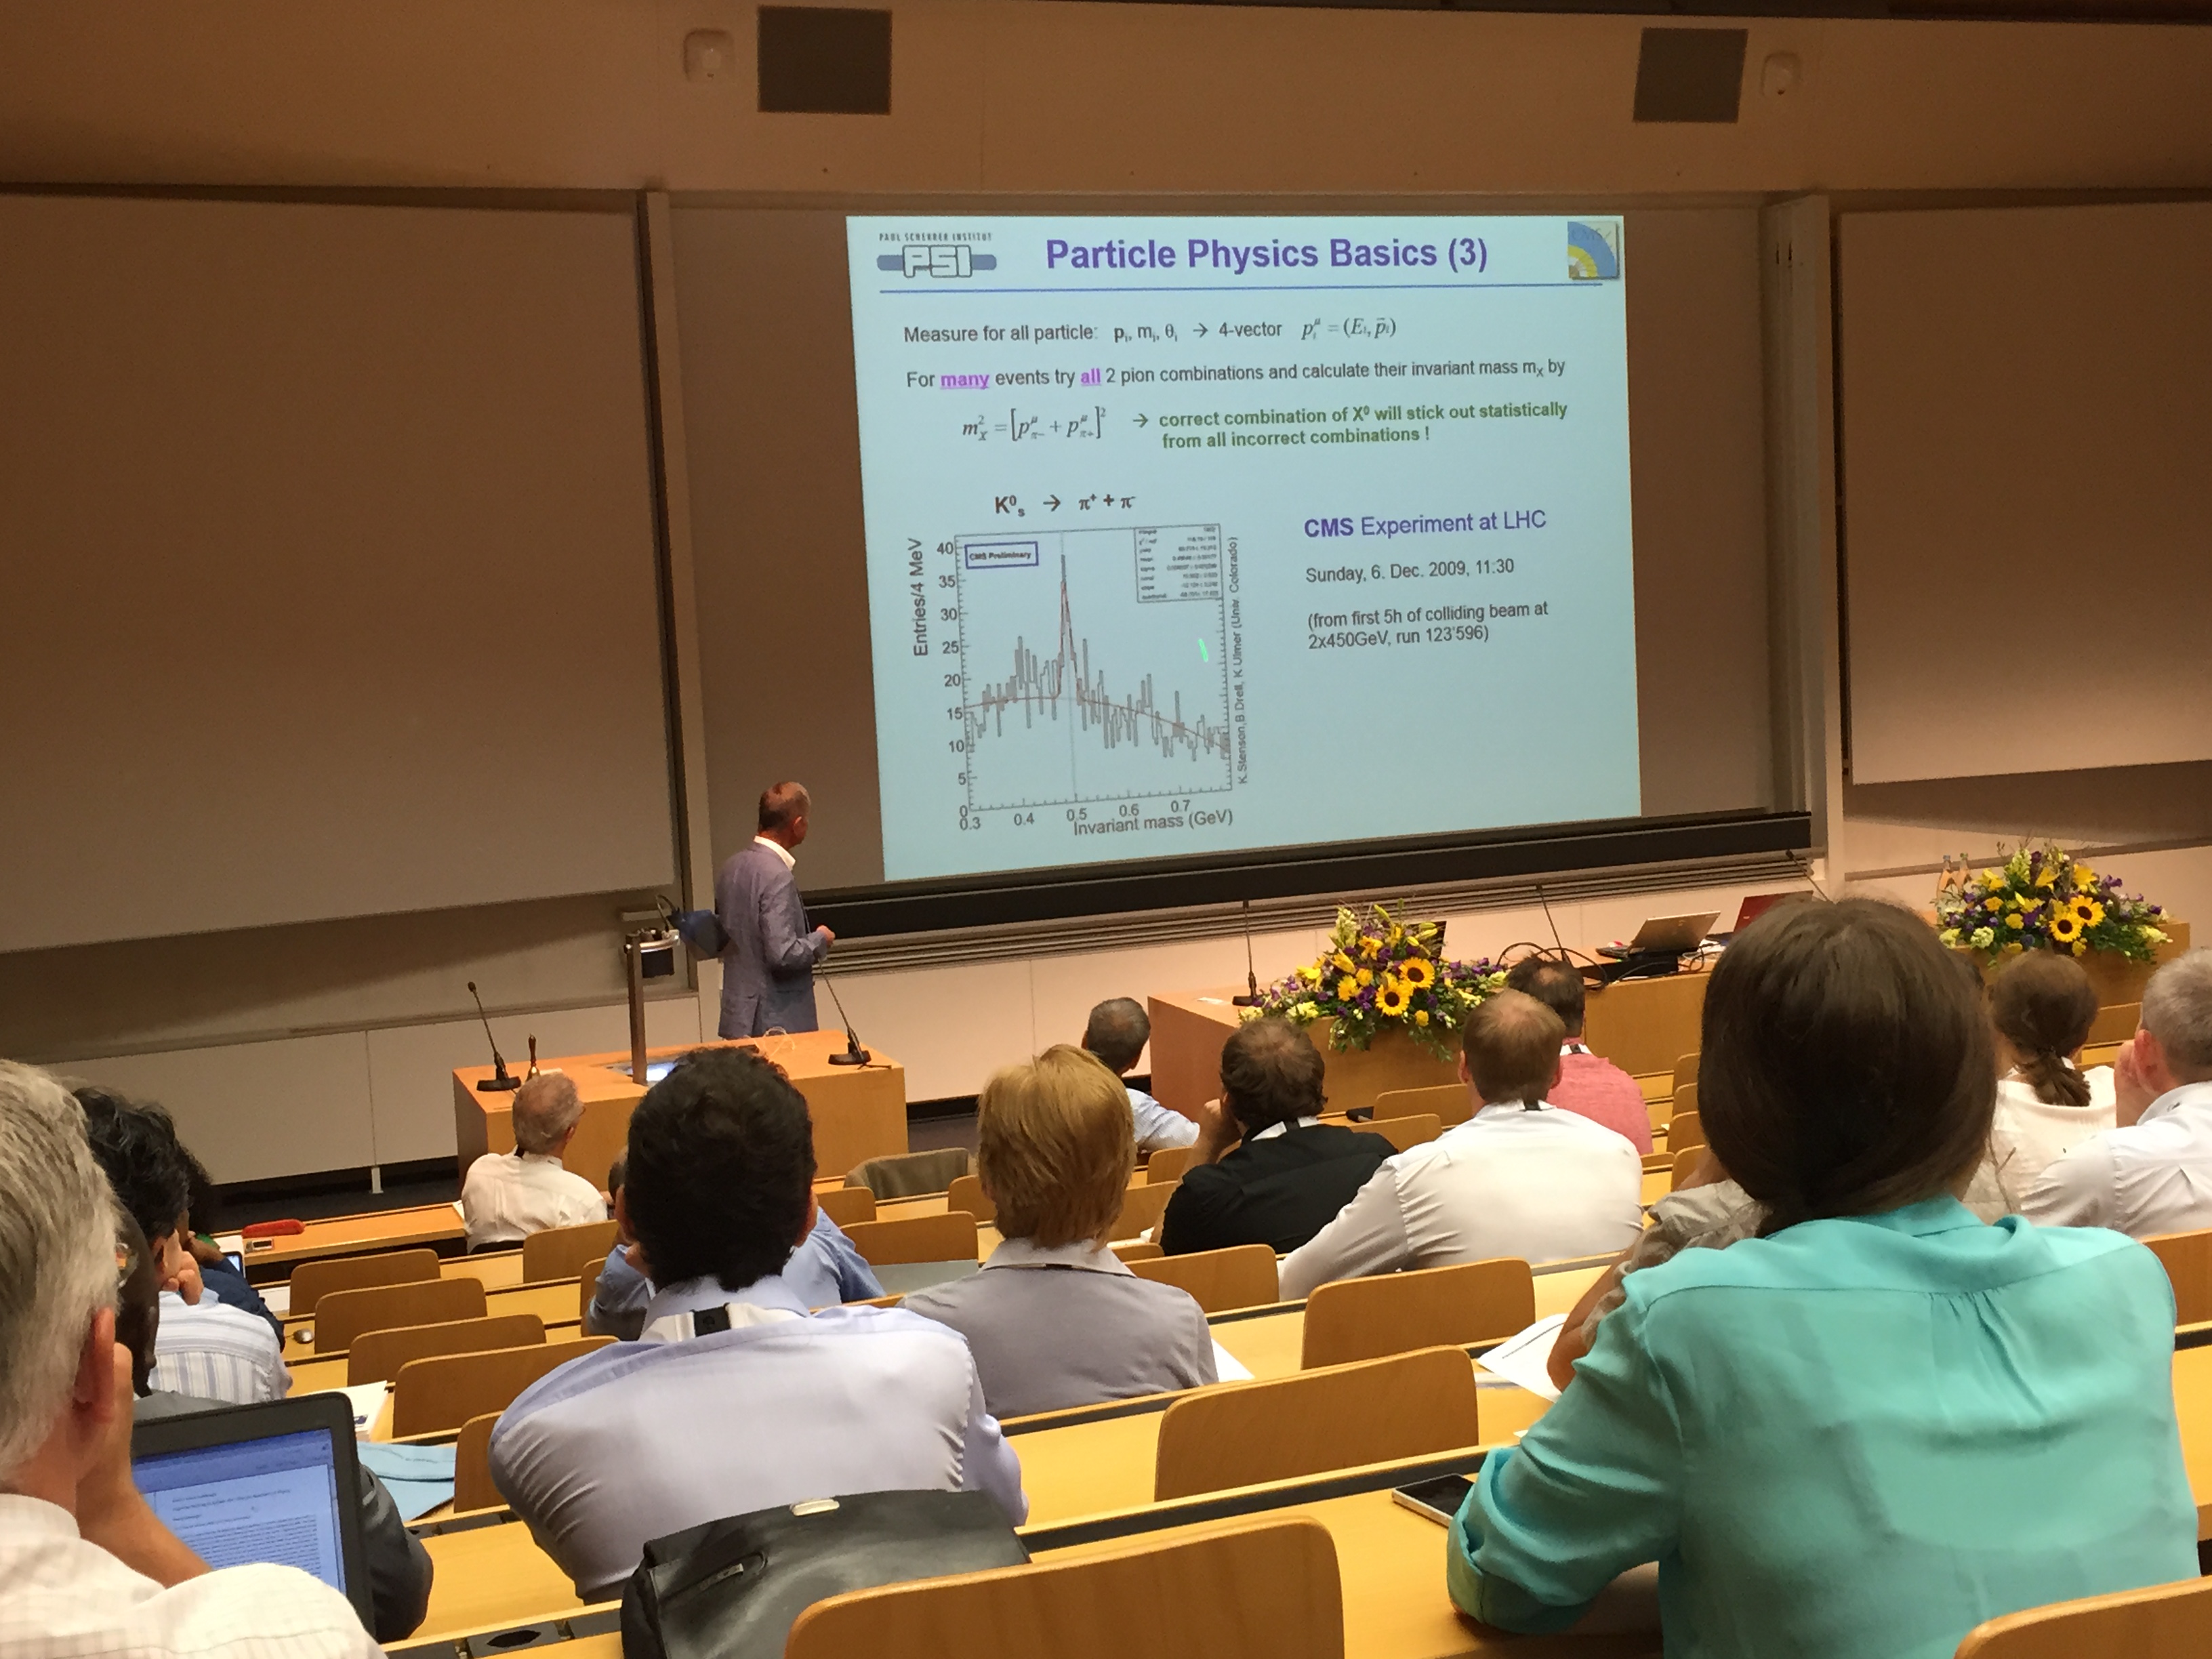 Sensor-Konferenz am Biozentrum in Basel: Der Redner spricht über das Cern nahe von Genf, die Gäste hören gebannt zu.